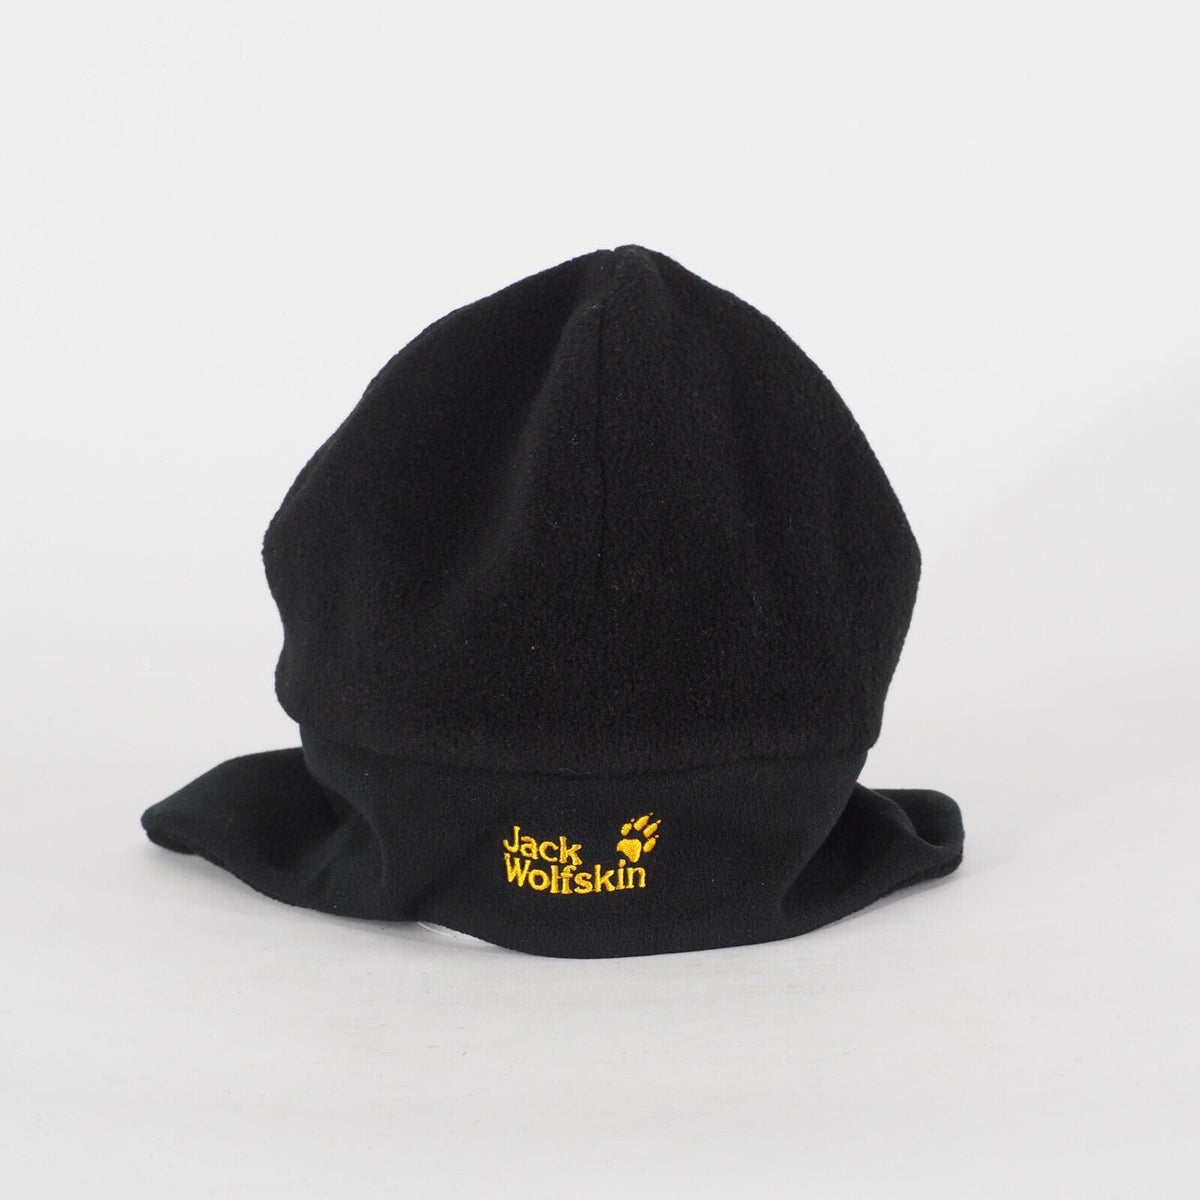 Kids Jack Wolfskin Stormlock 18928 Black Winter Hat Casual Outdoor Hat